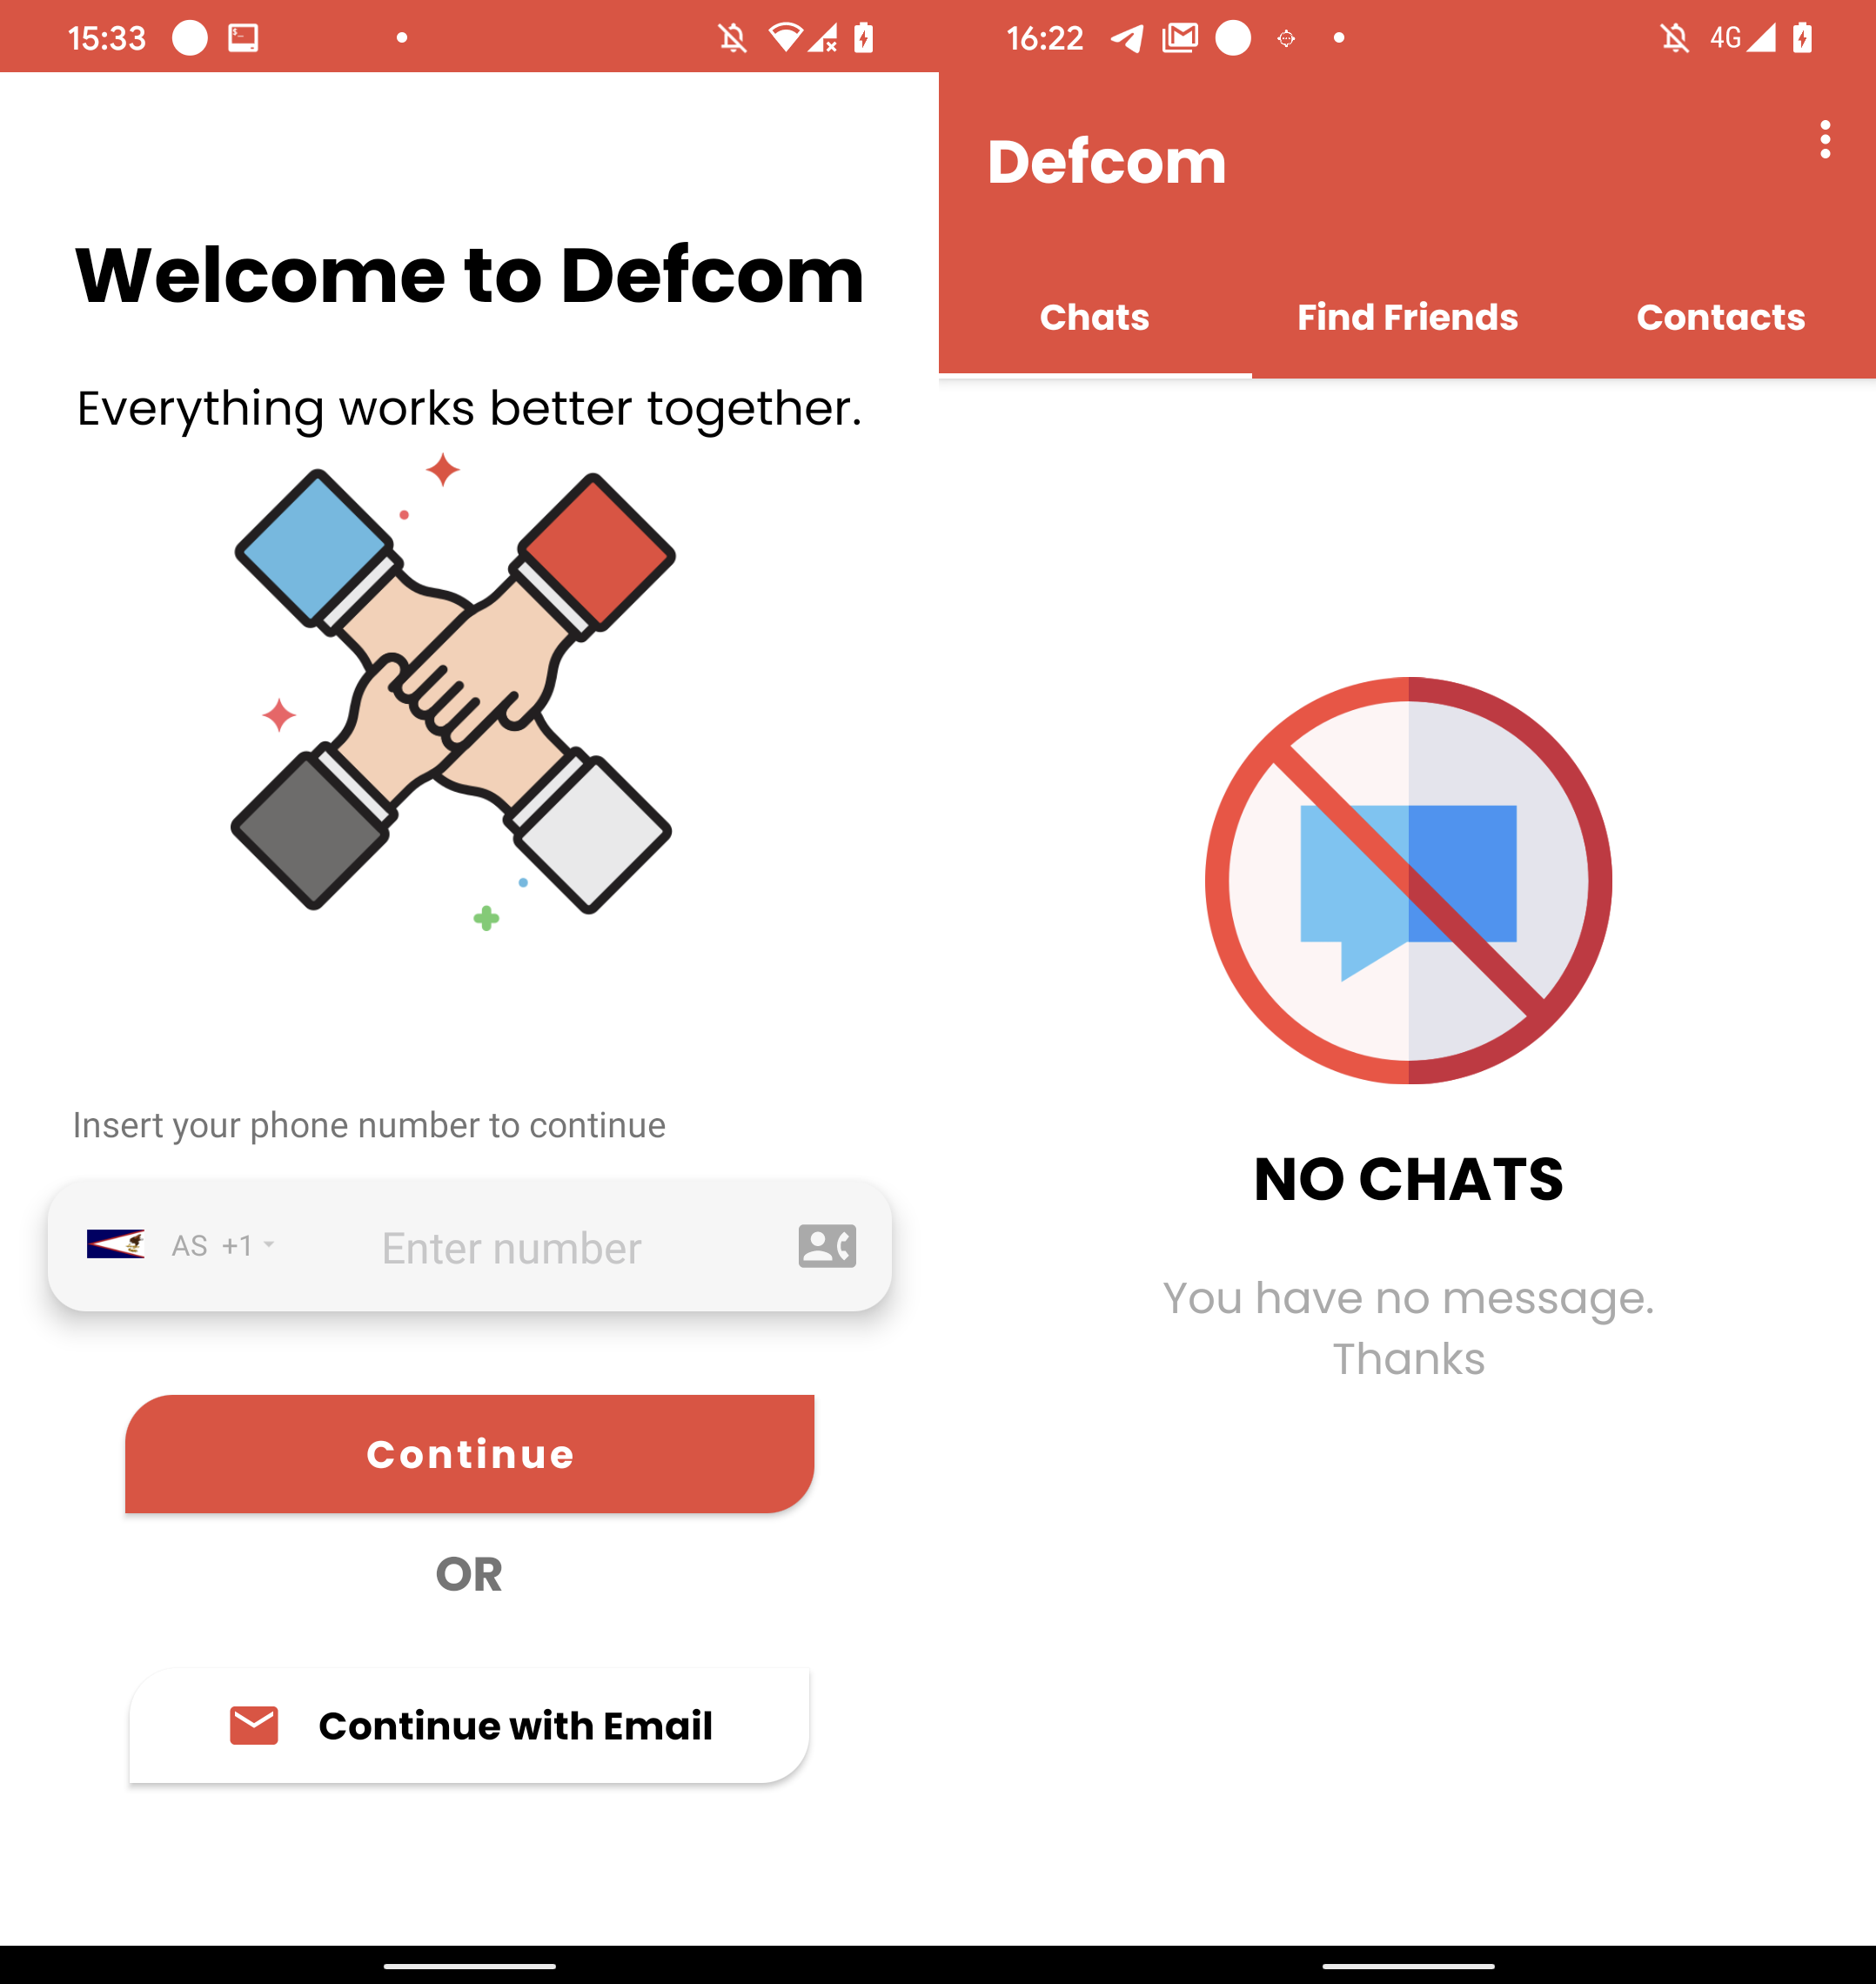 図 11. Defcom のログイン インターフェイス (左) とアプリ内タブ (右)